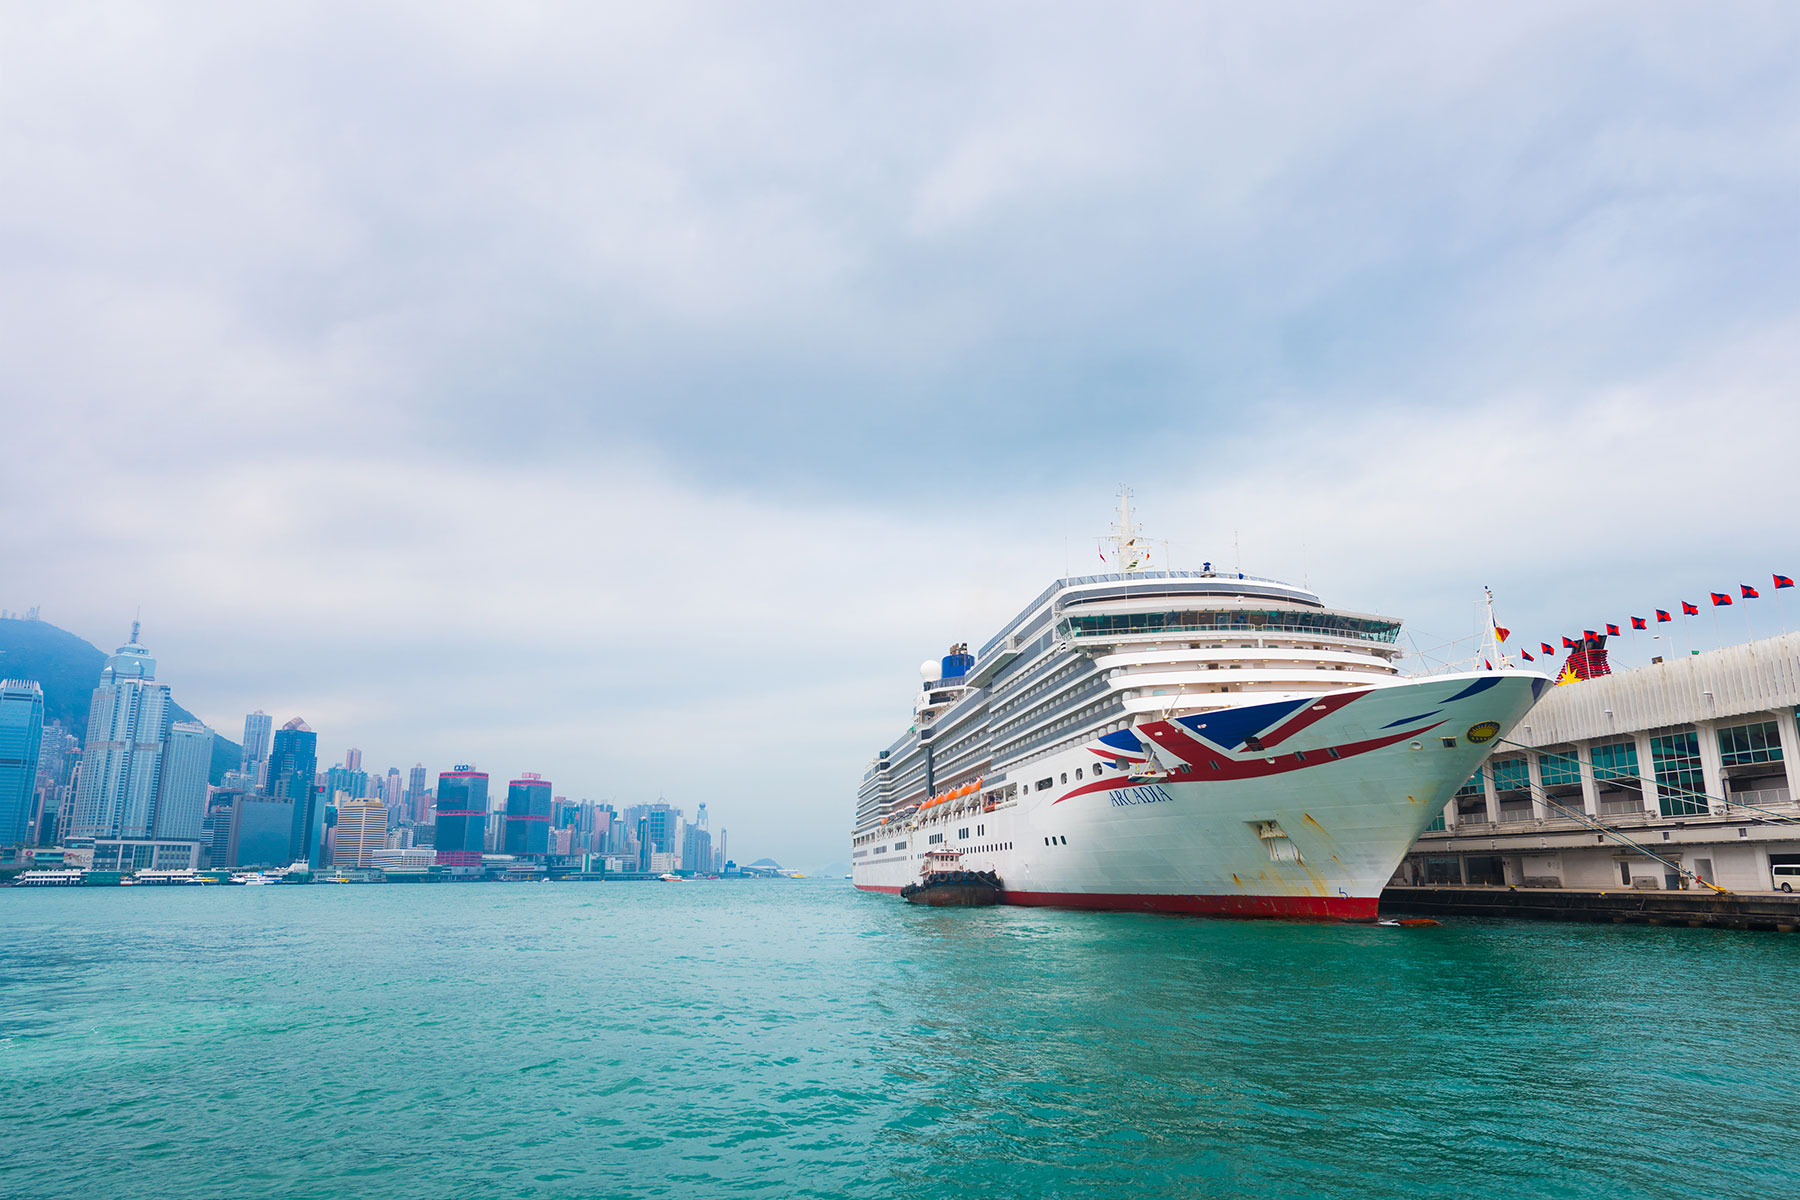 P&O's Arcadia ship docked at Hong Kong (Image: withGod/Shutterstock)